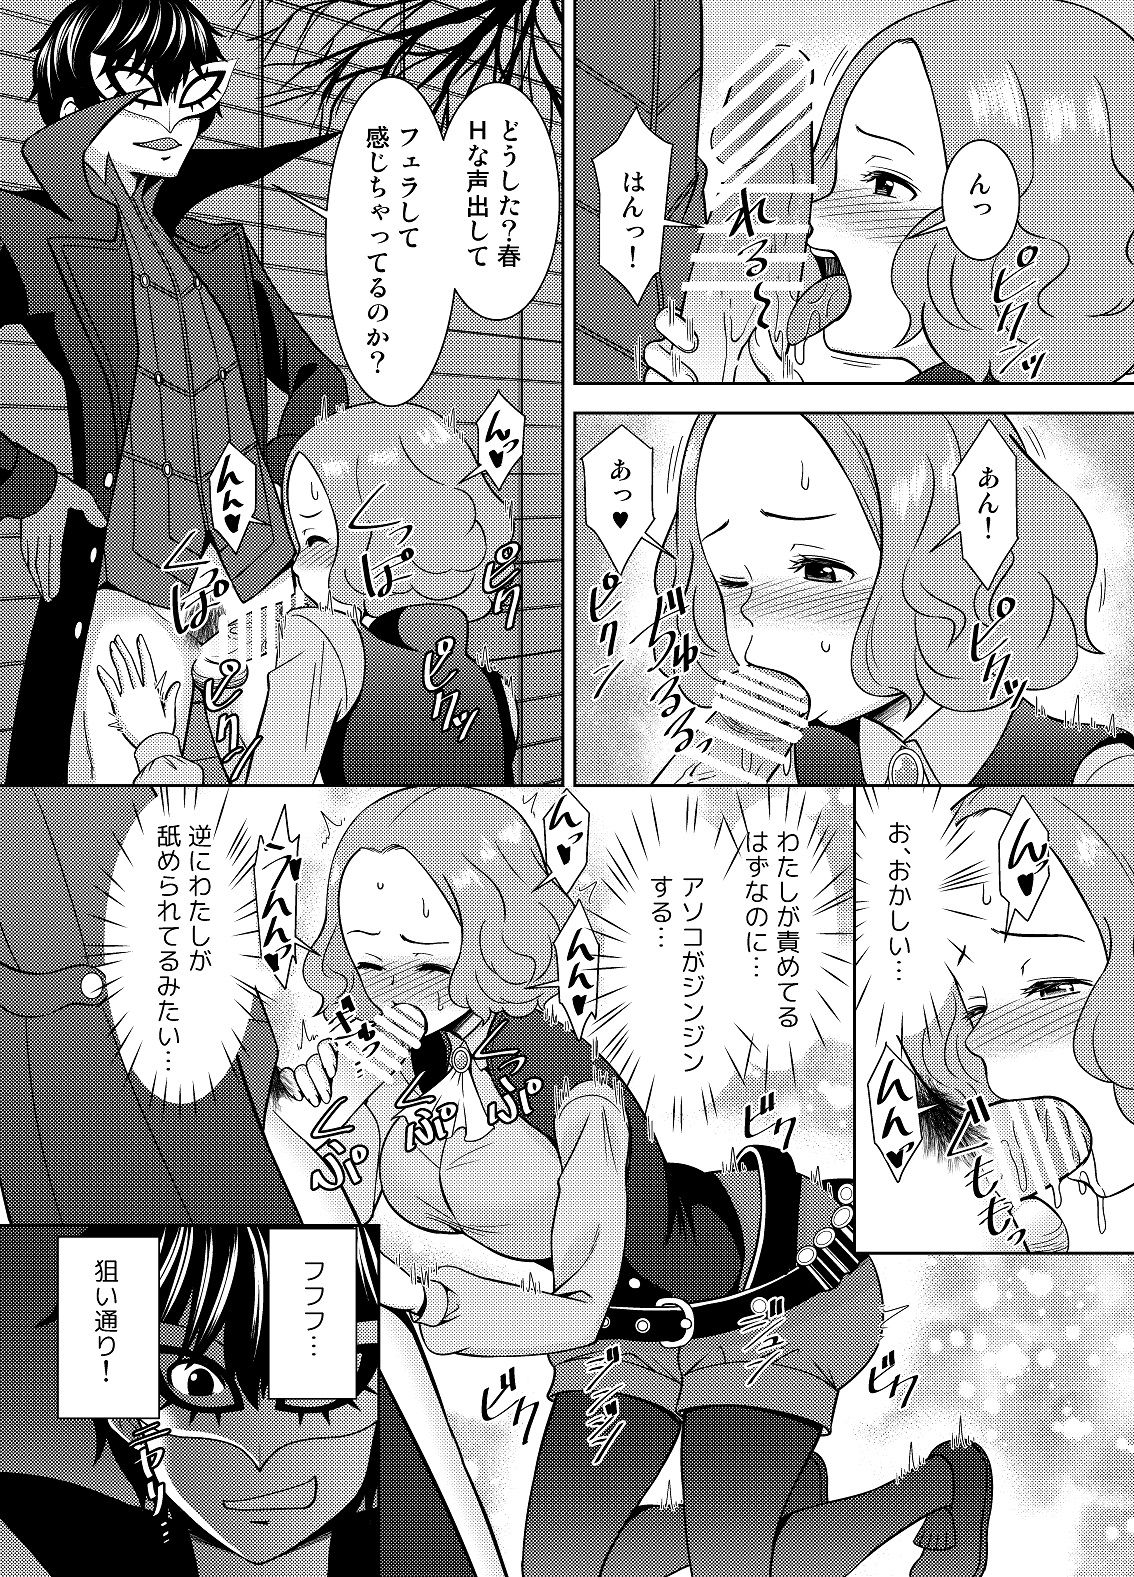 [Shikiouzi] Have Kokoro of the Haru (Persona 5) [Digital] page 9 full